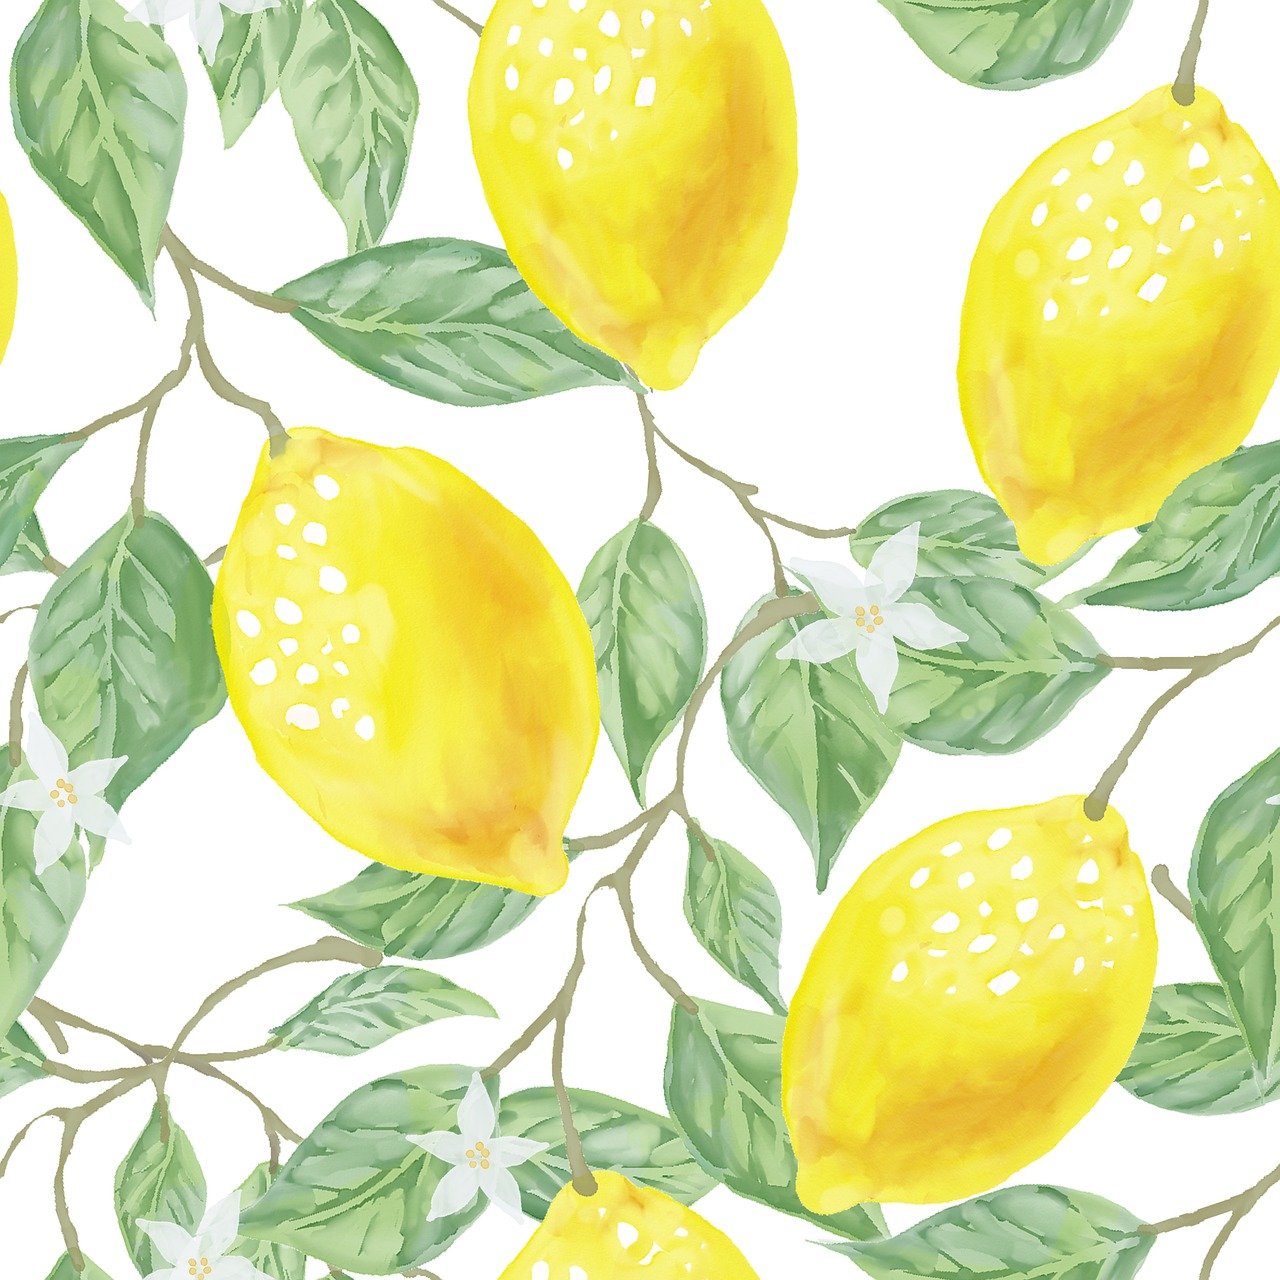 Récolte des citrons : astuces pour des fruits sains et savoureux